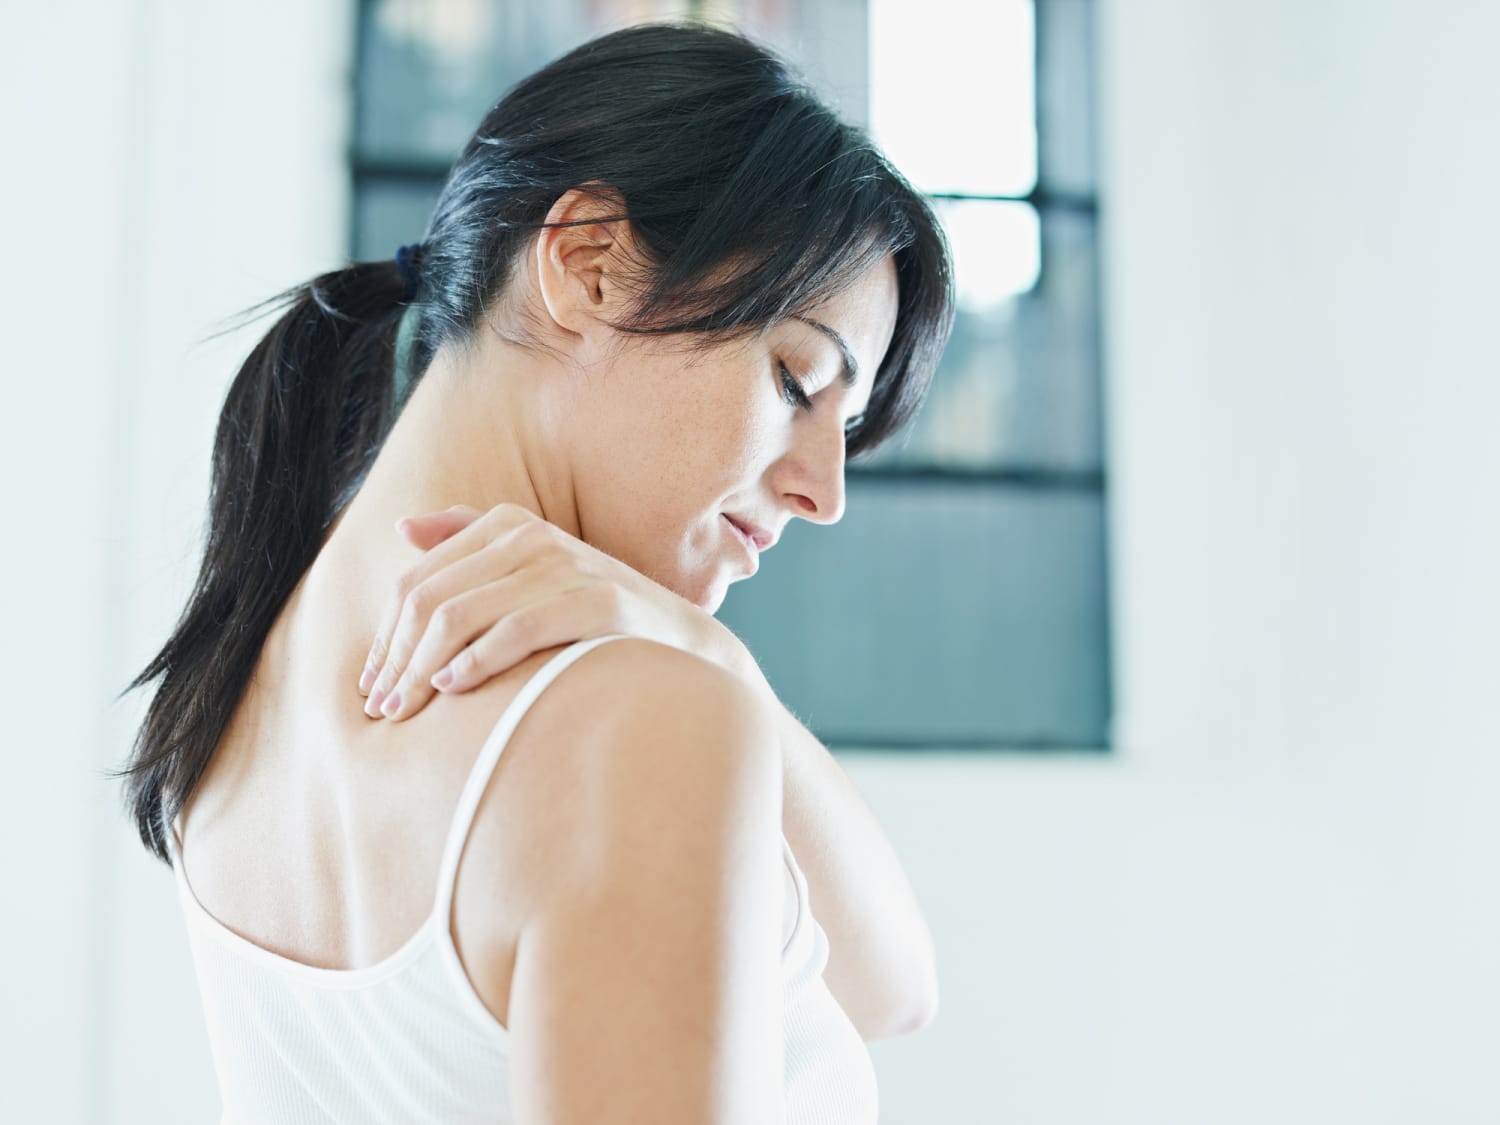 Fáj a háta? 6 módszer, ami csillapíthatja a fájdalmat - EgészségKalauz